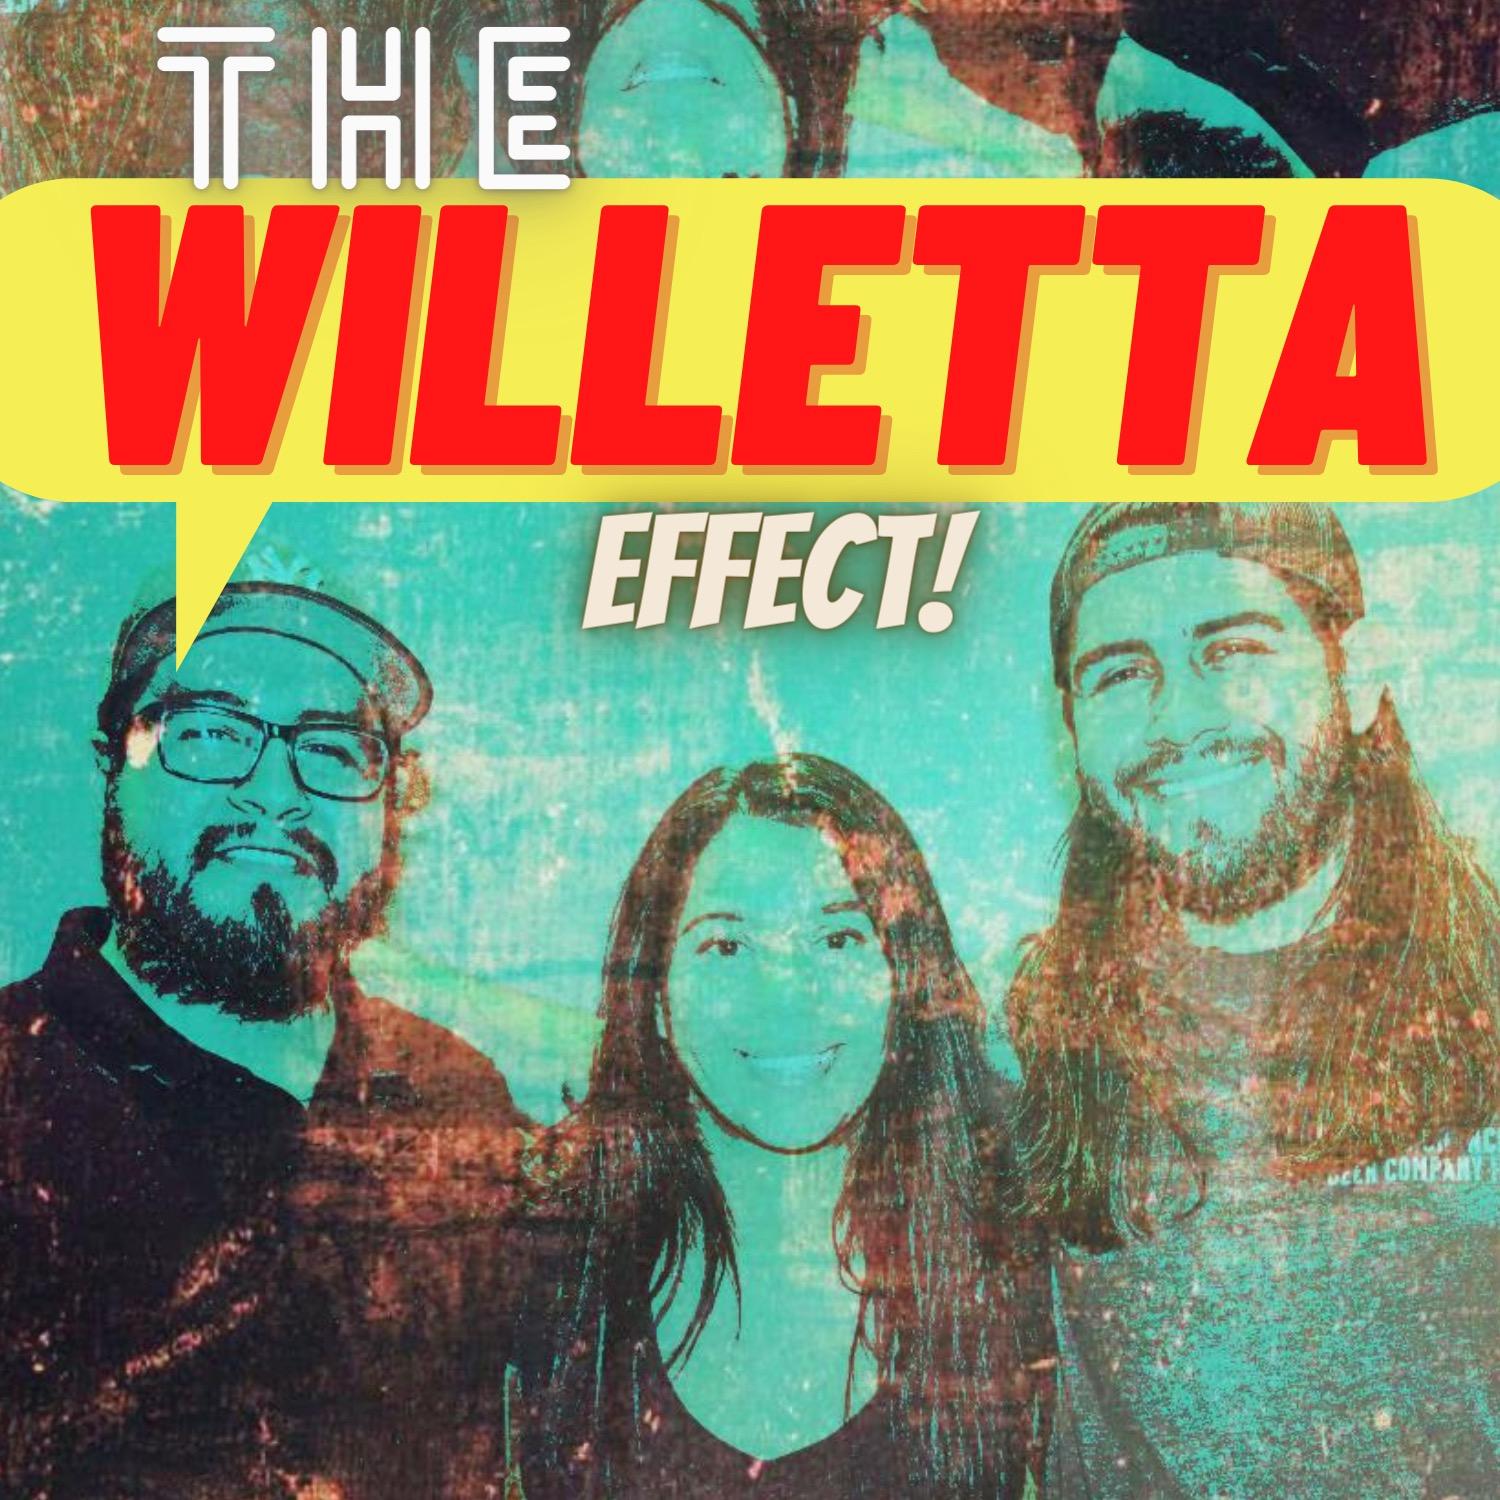 The Willetta Effect